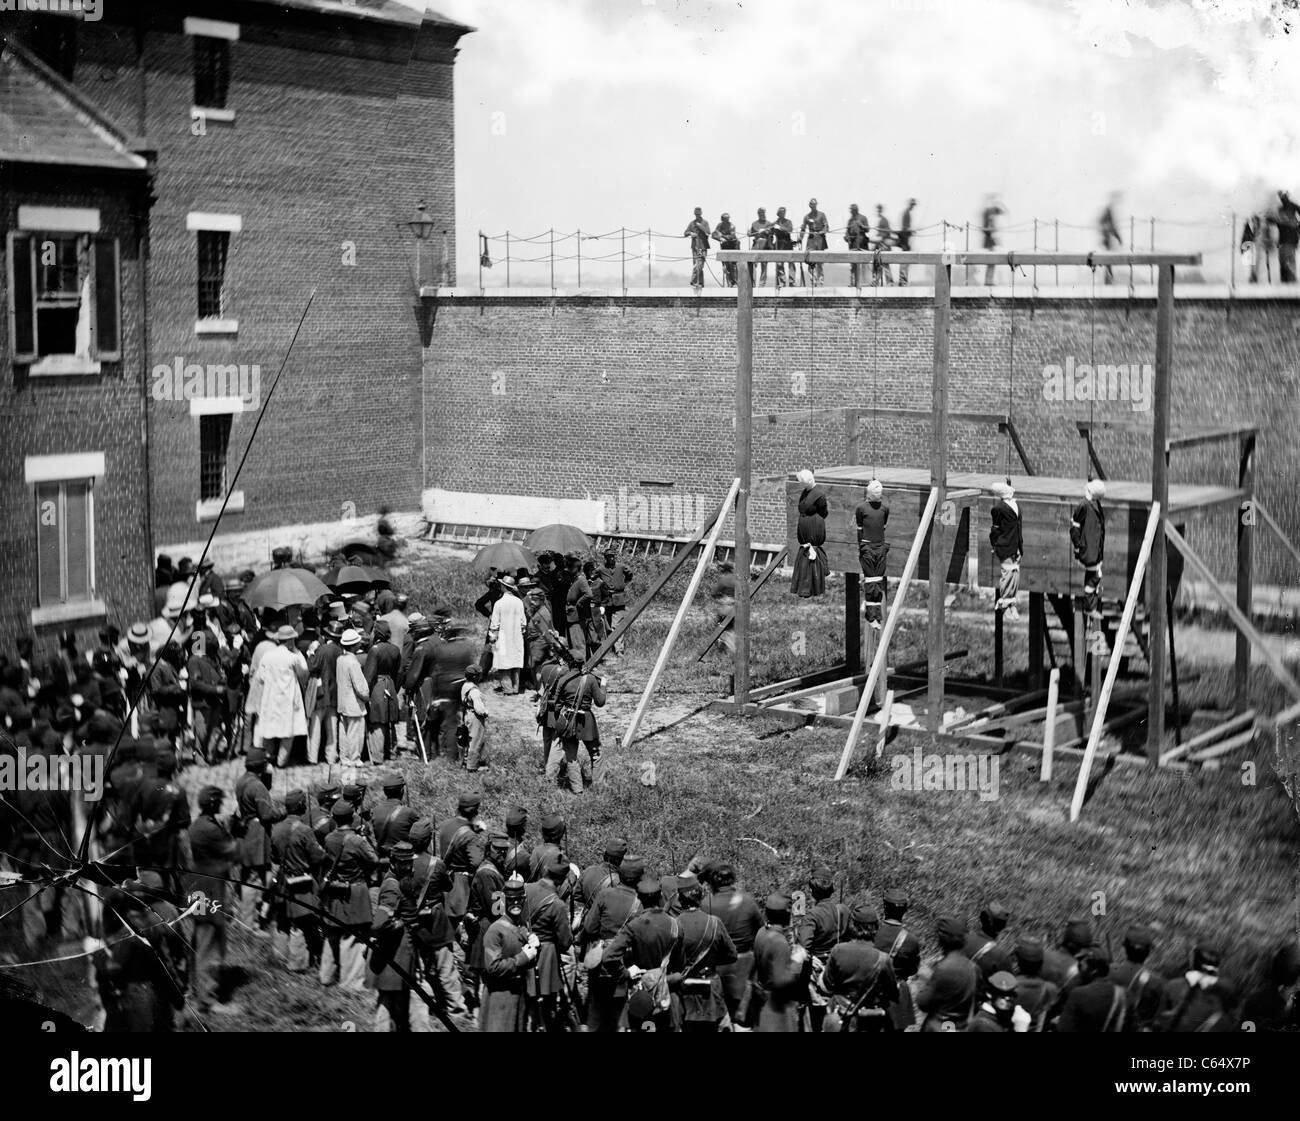 Hinrichtung von Mary Surratt, Lewis Powell, David Herold und George Atzerodt am 7. Juli 1865 in Fort McNair in Washington, D.C. Stockfoto